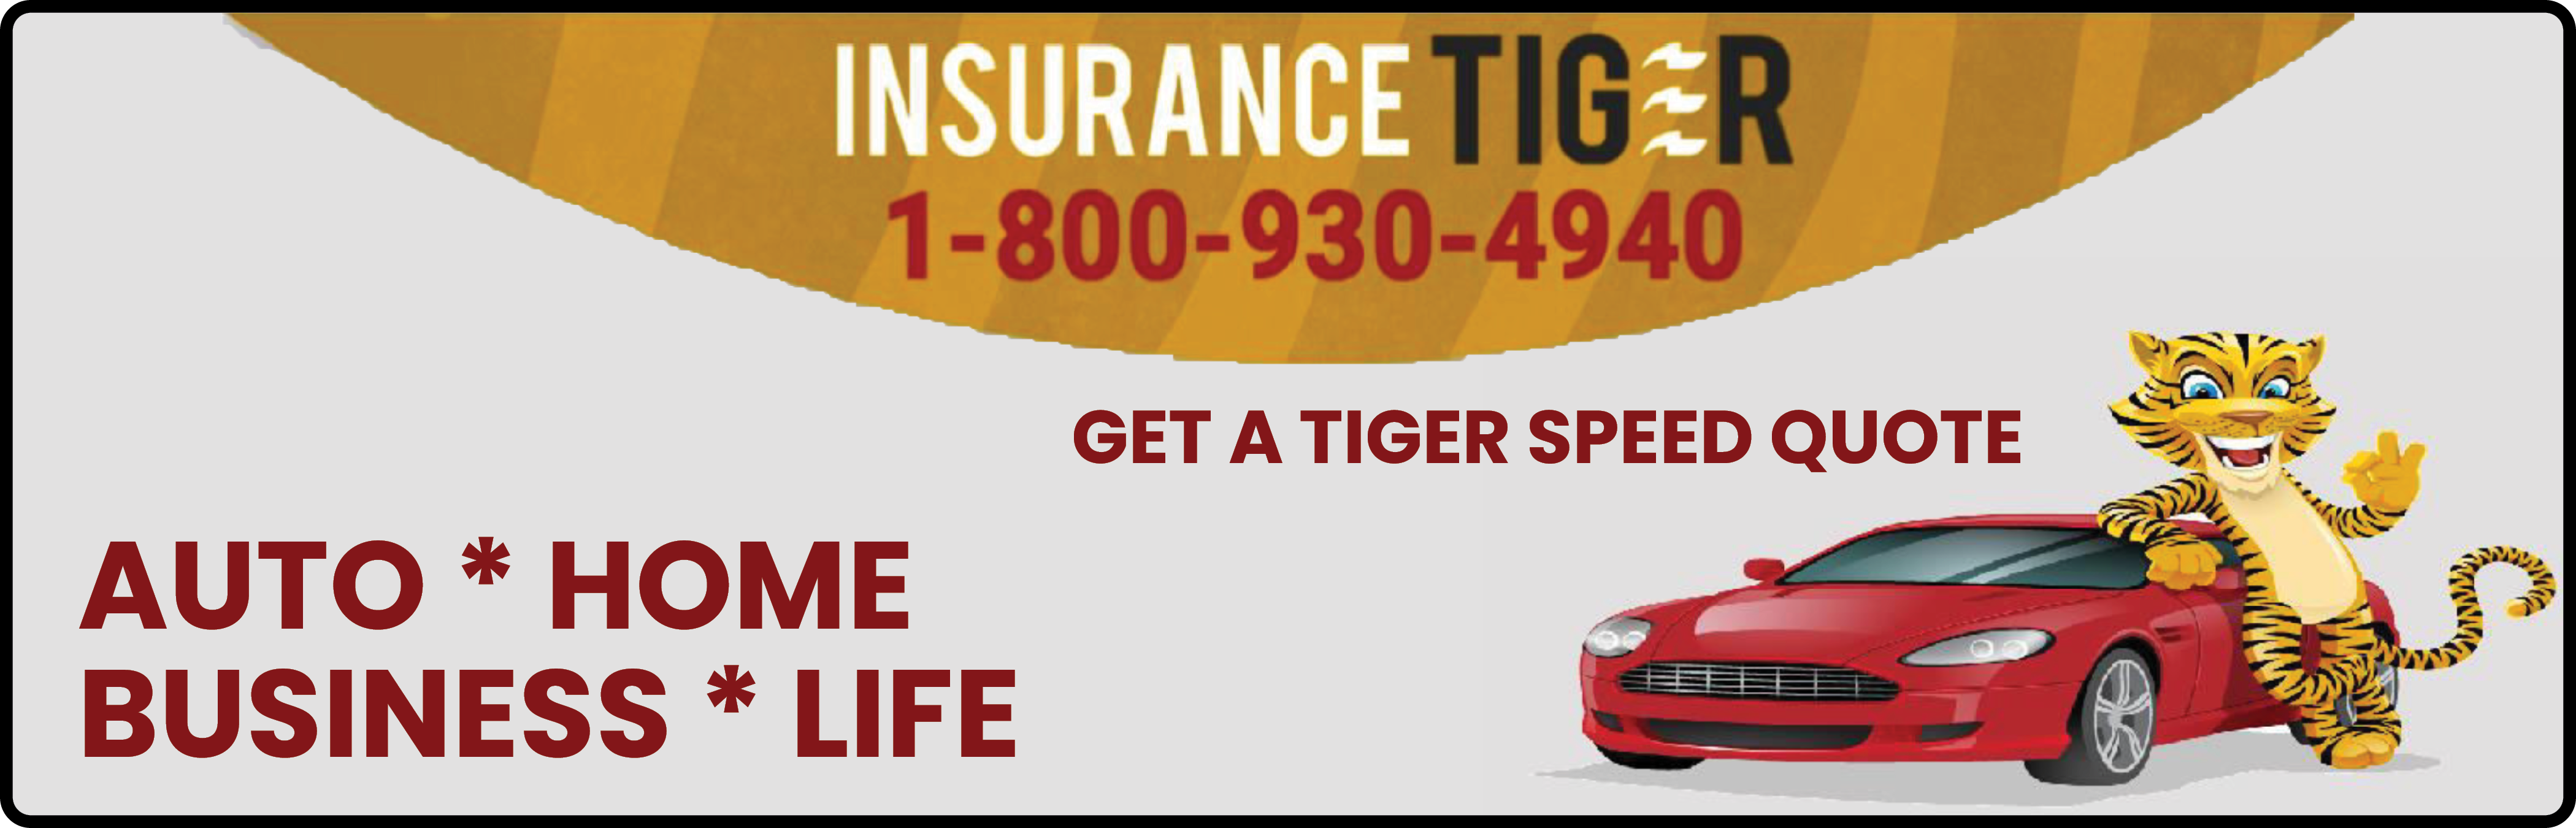 Insurance Tiger